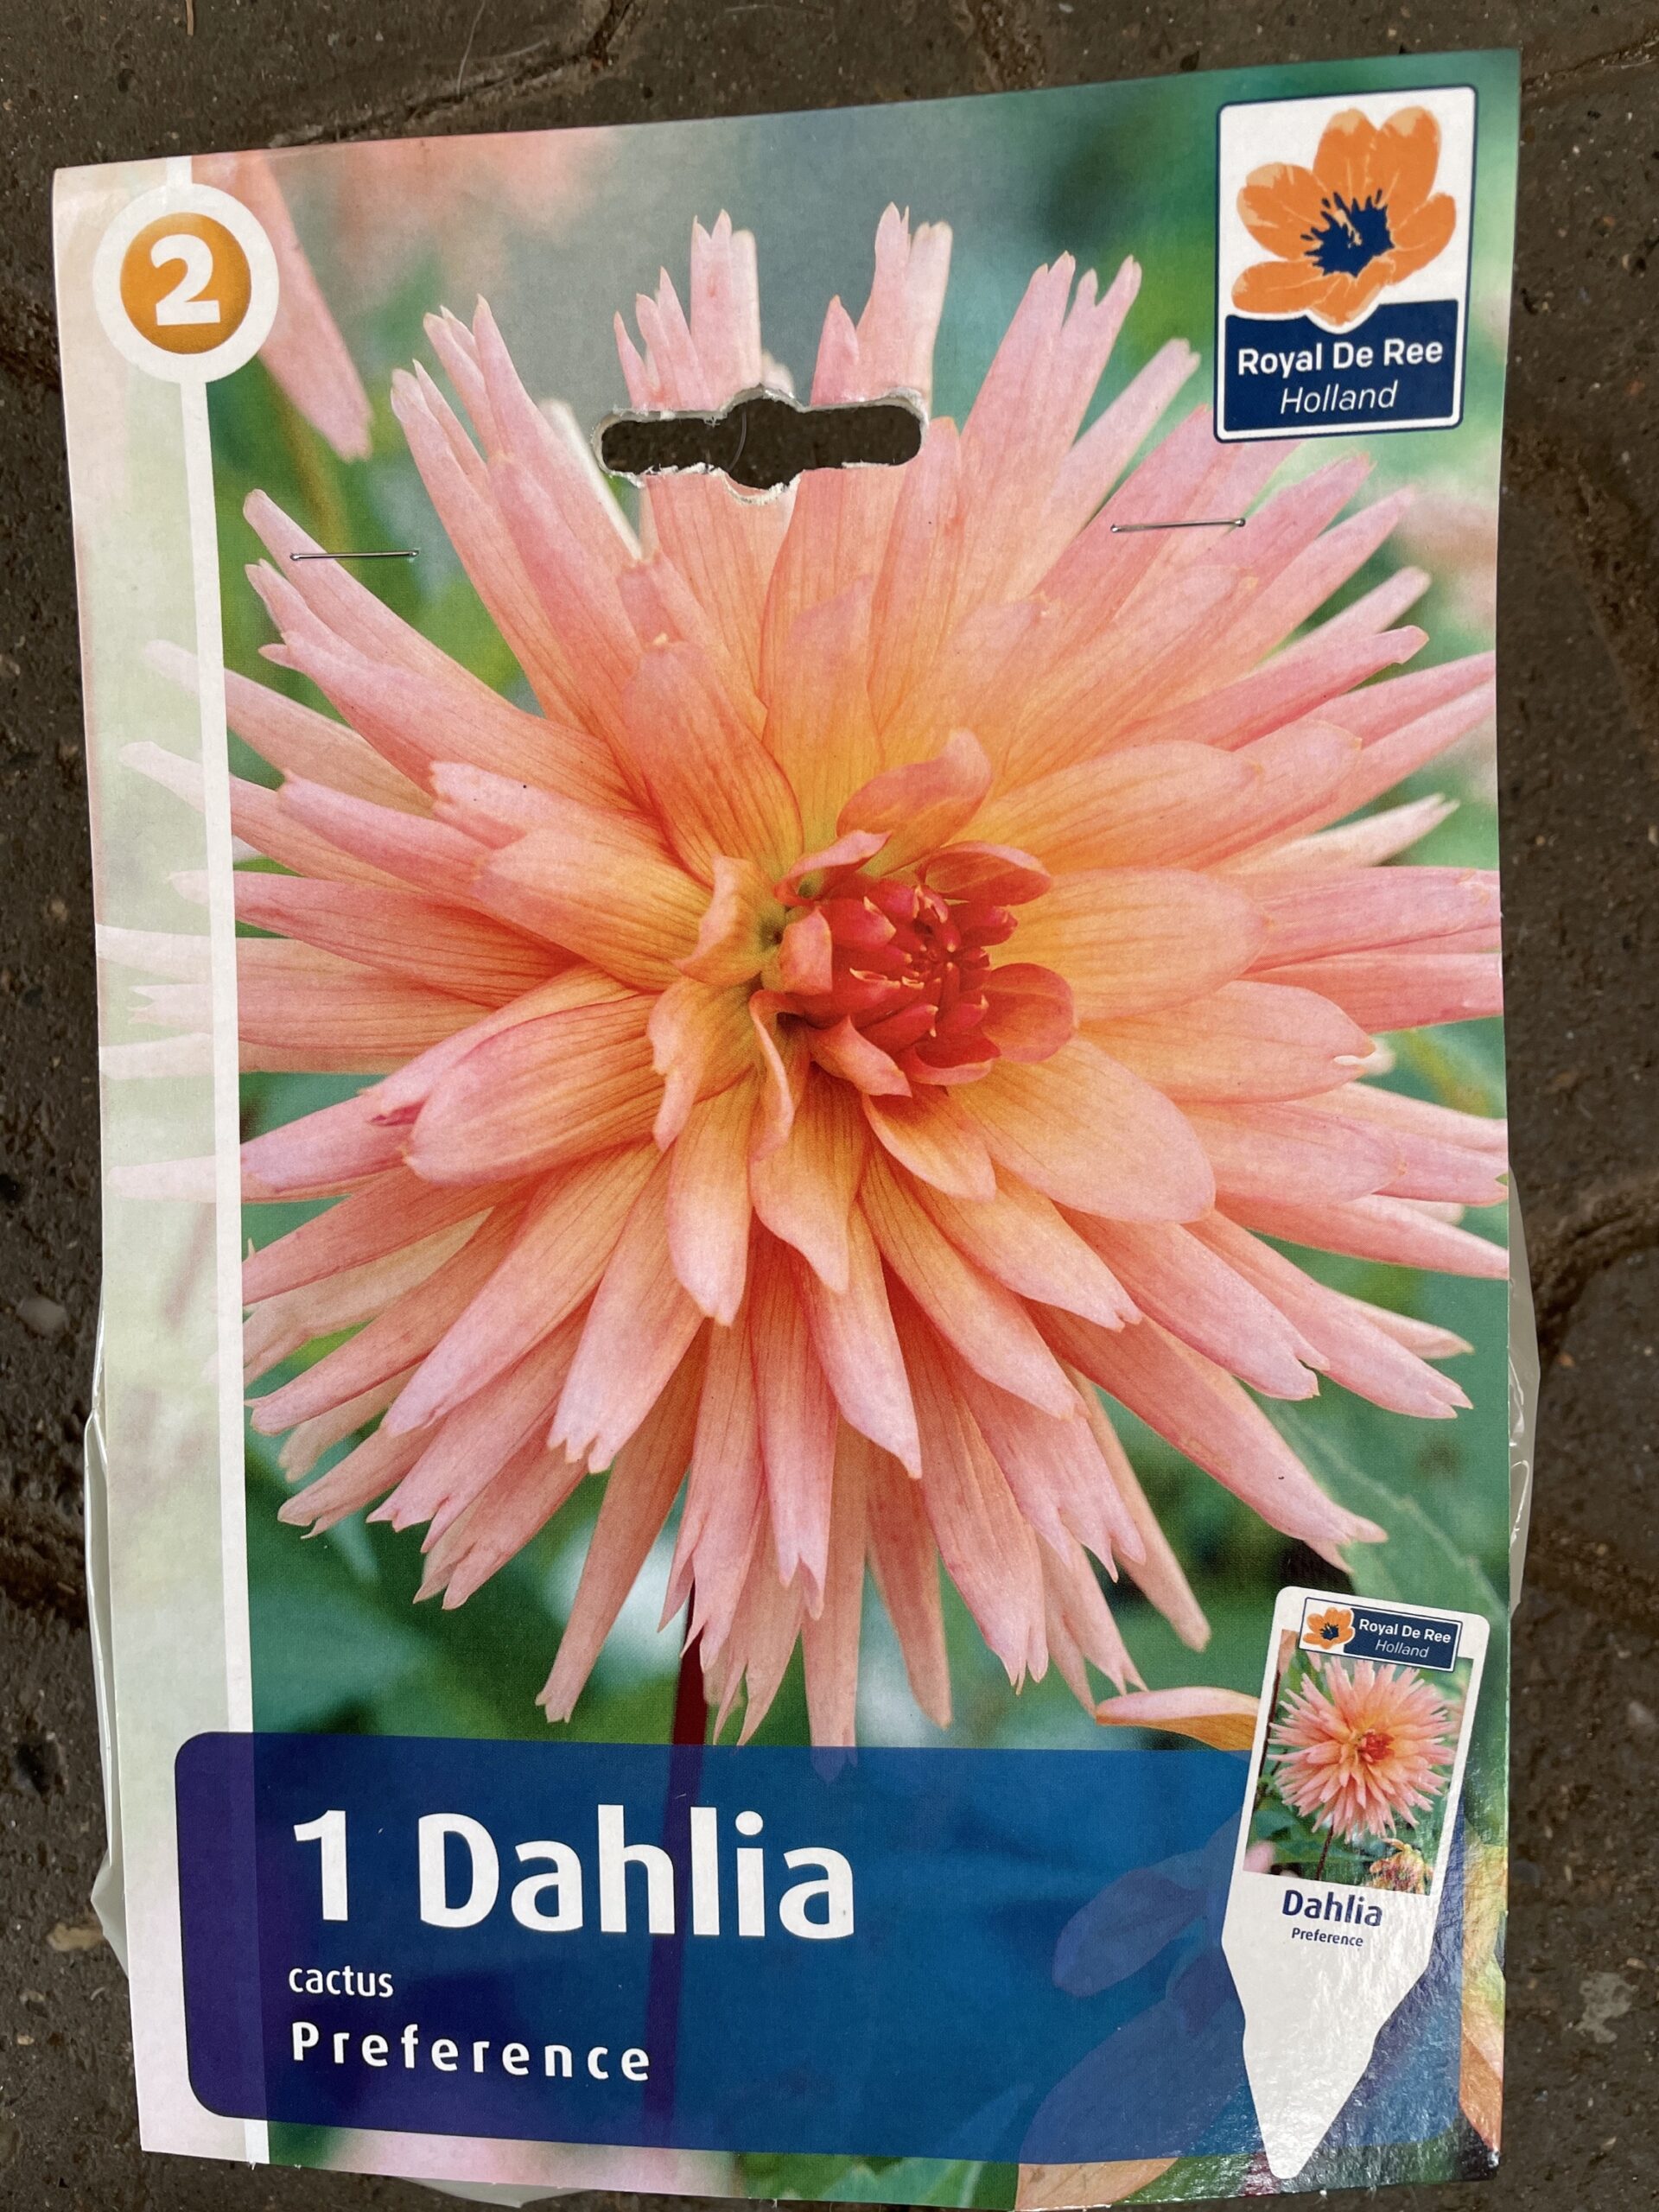 Korrekt skrå Udvinding Dahlia Preference - 1 stk. - Duelunds planter